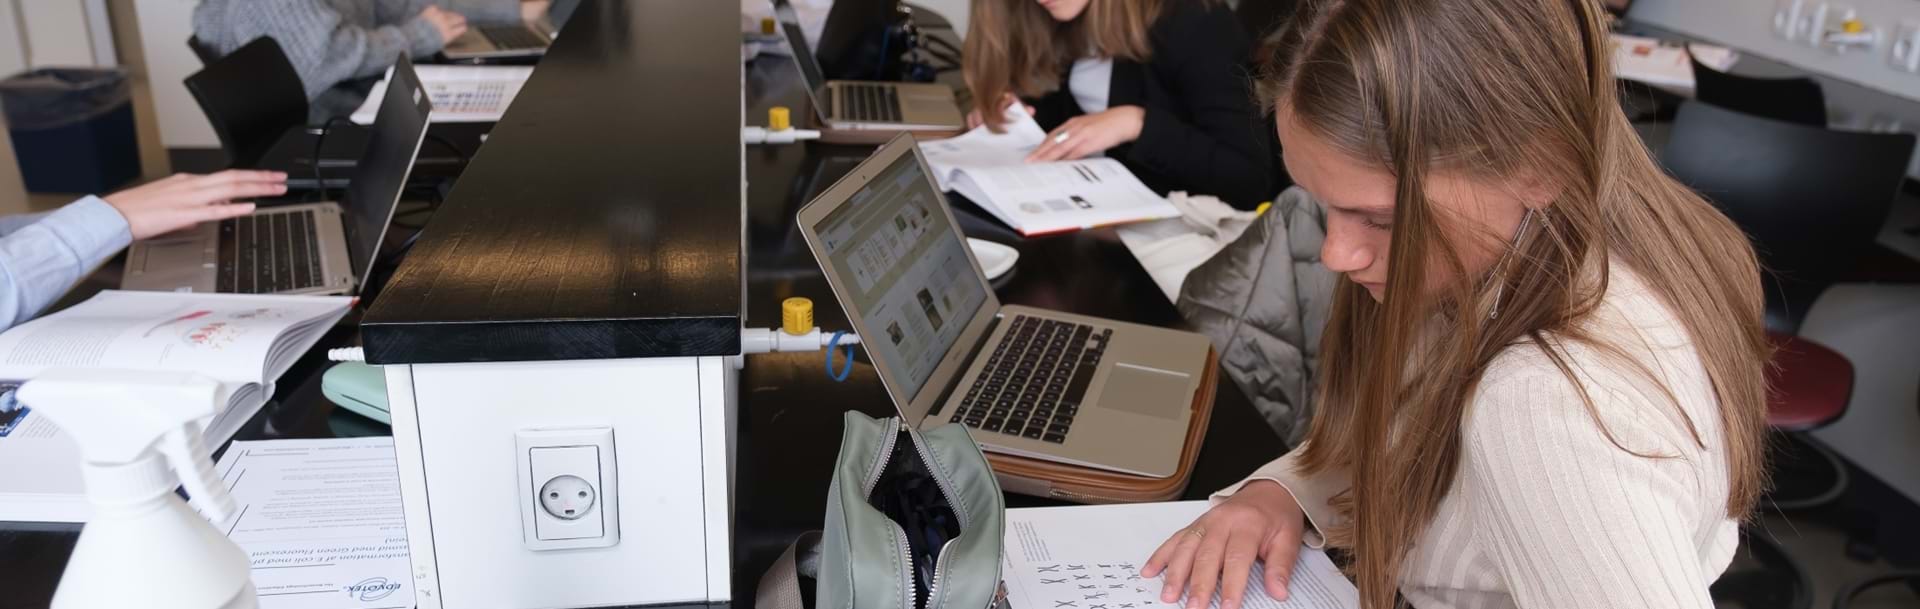 Elever laver biologiopgaver på computeren